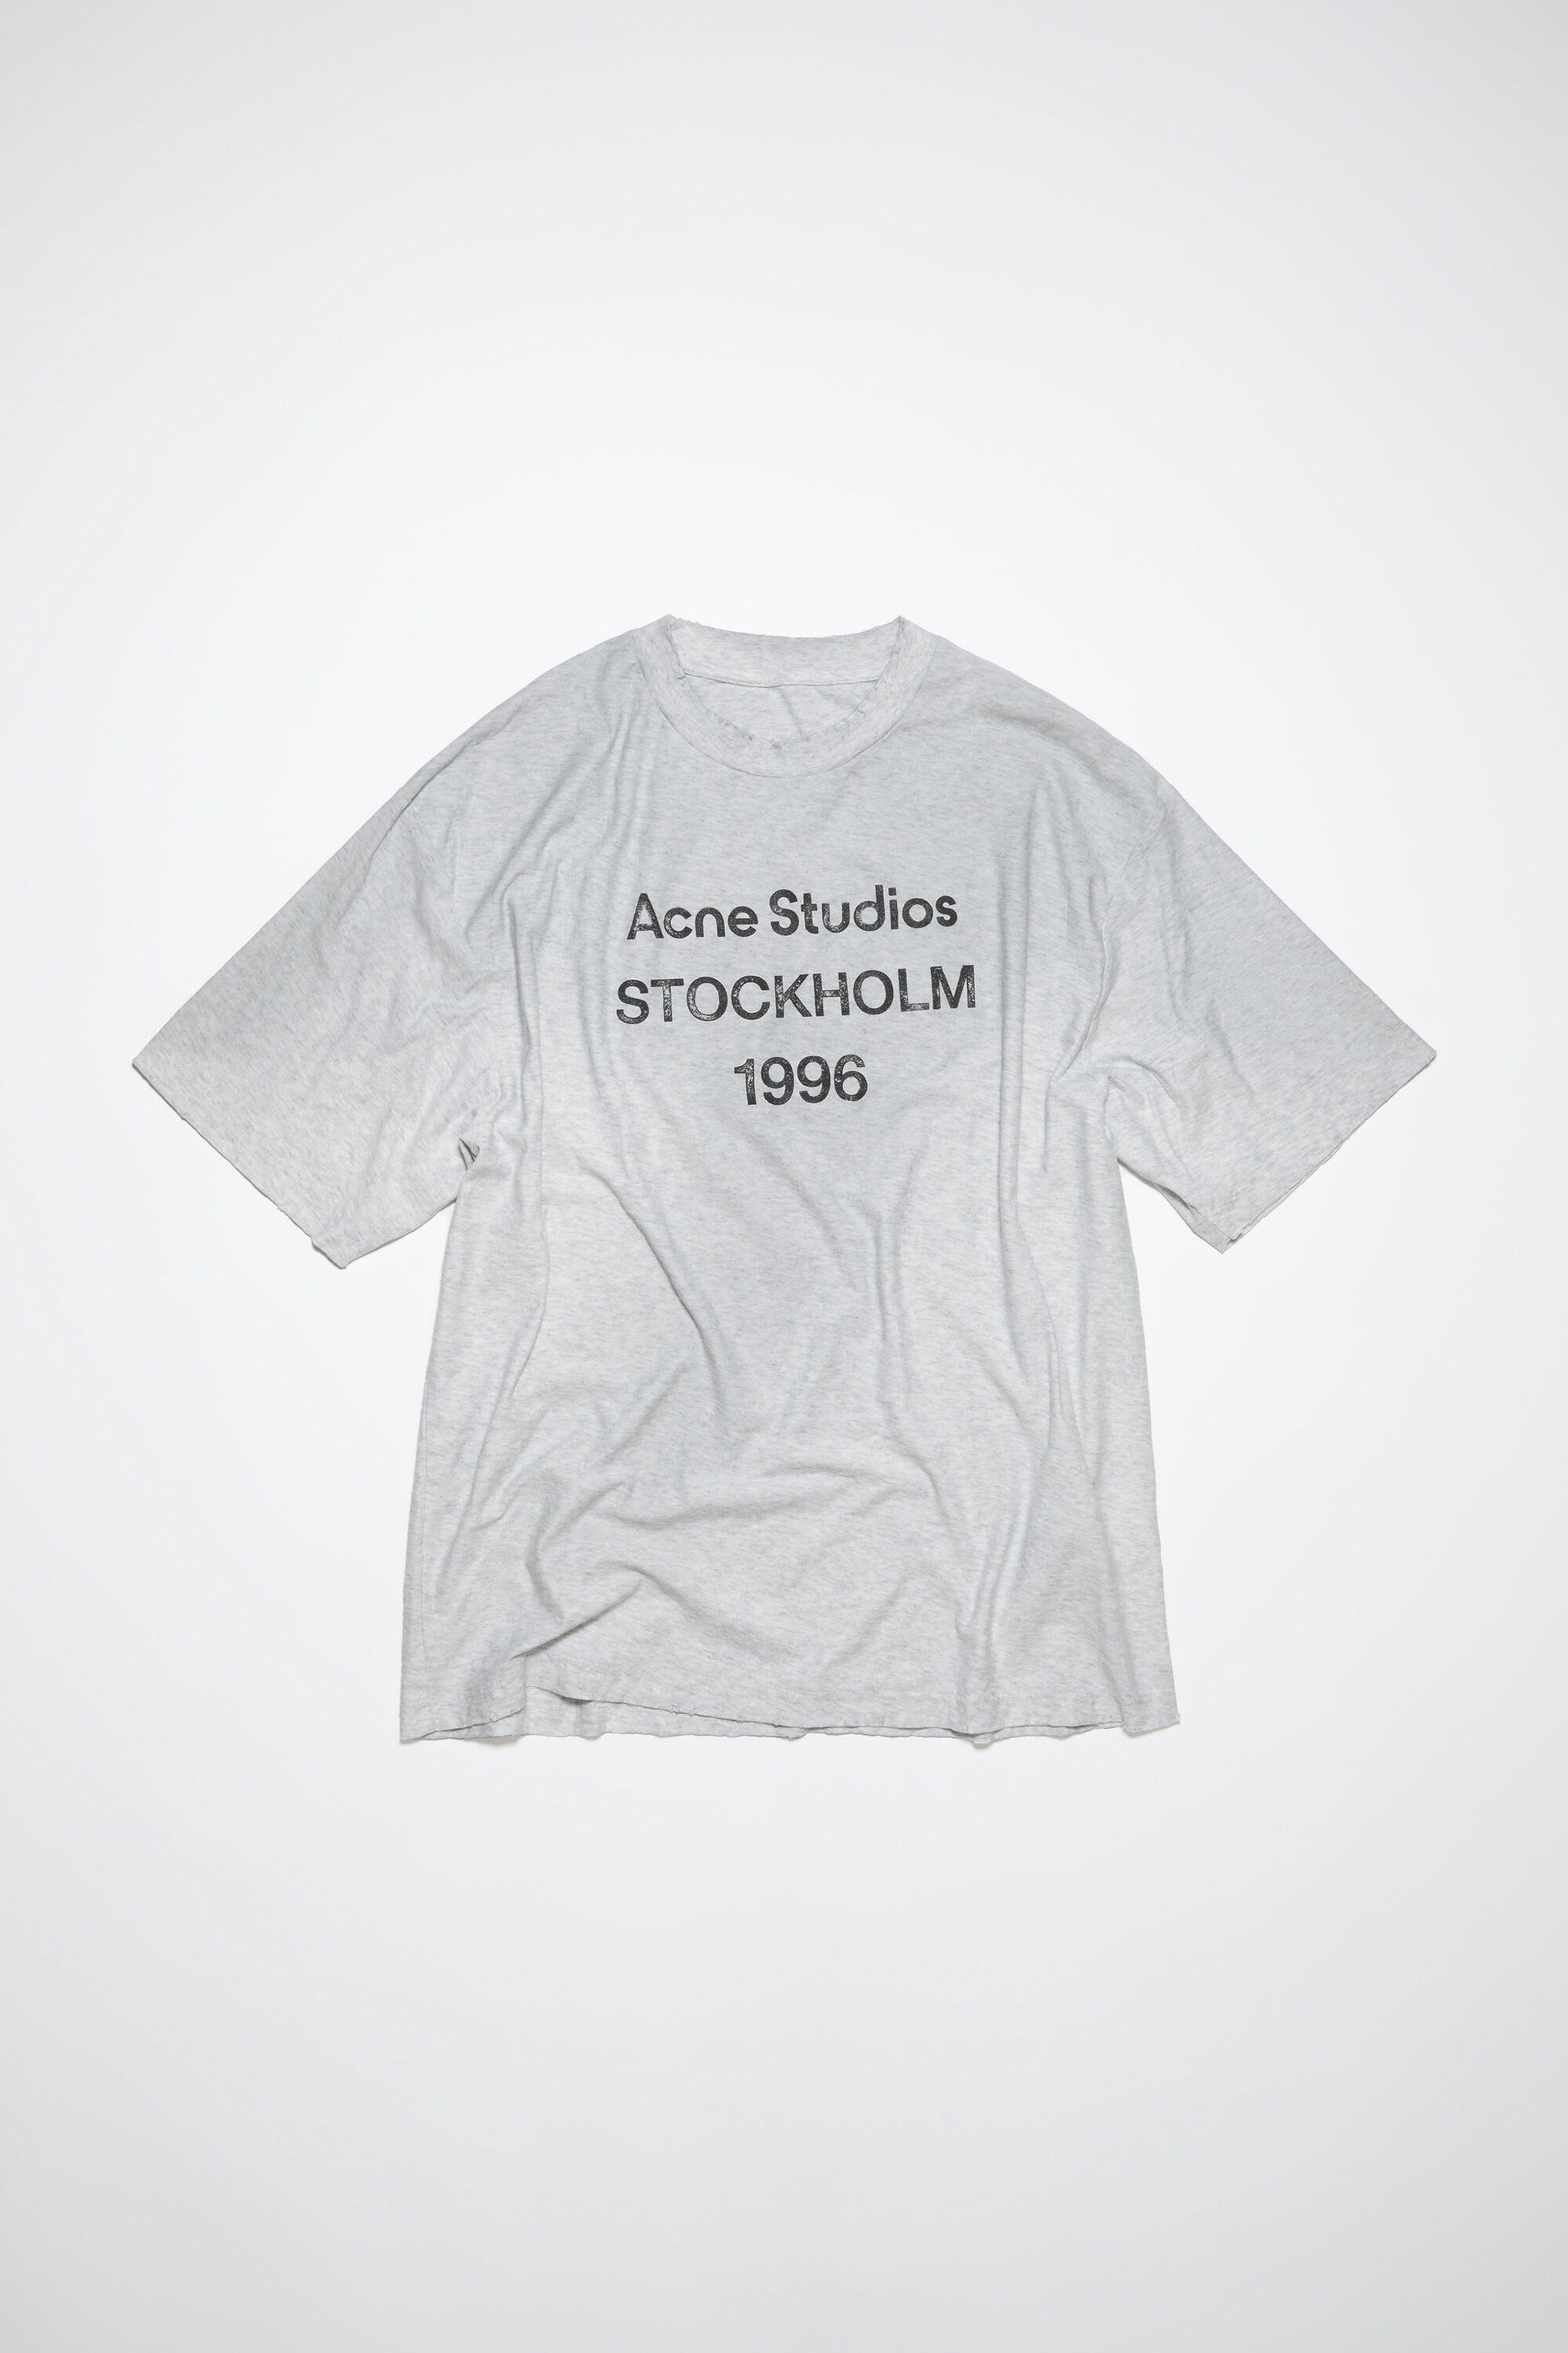 アクネスタジオ/Acne StudiosホワイトプリントTシャツX Sサイズ